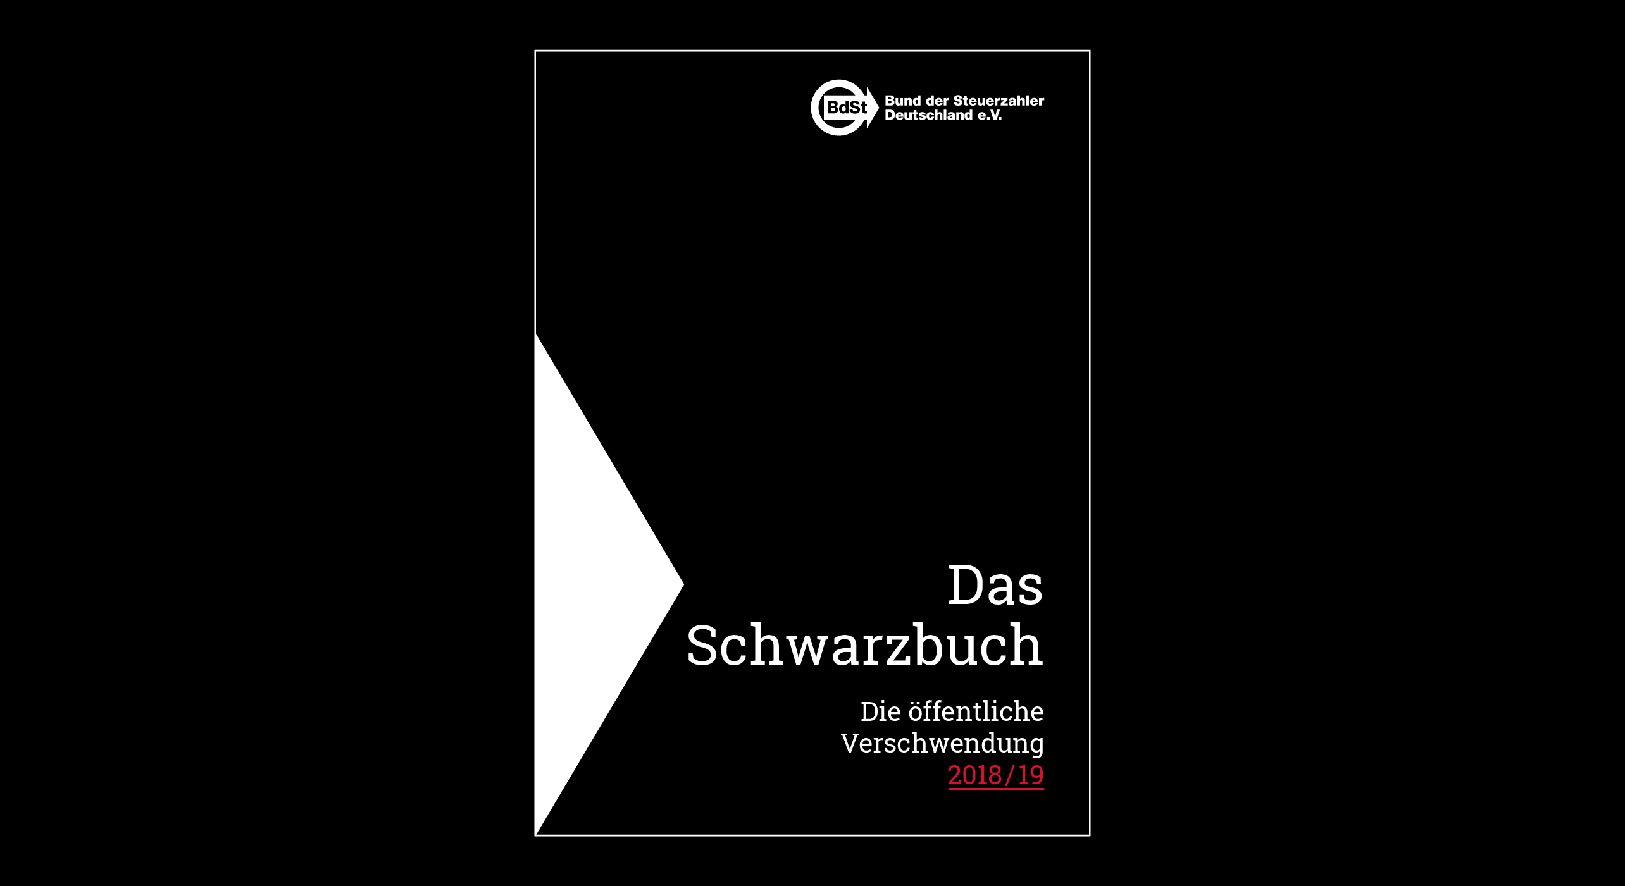 Das Schwarzbuch 2018/19